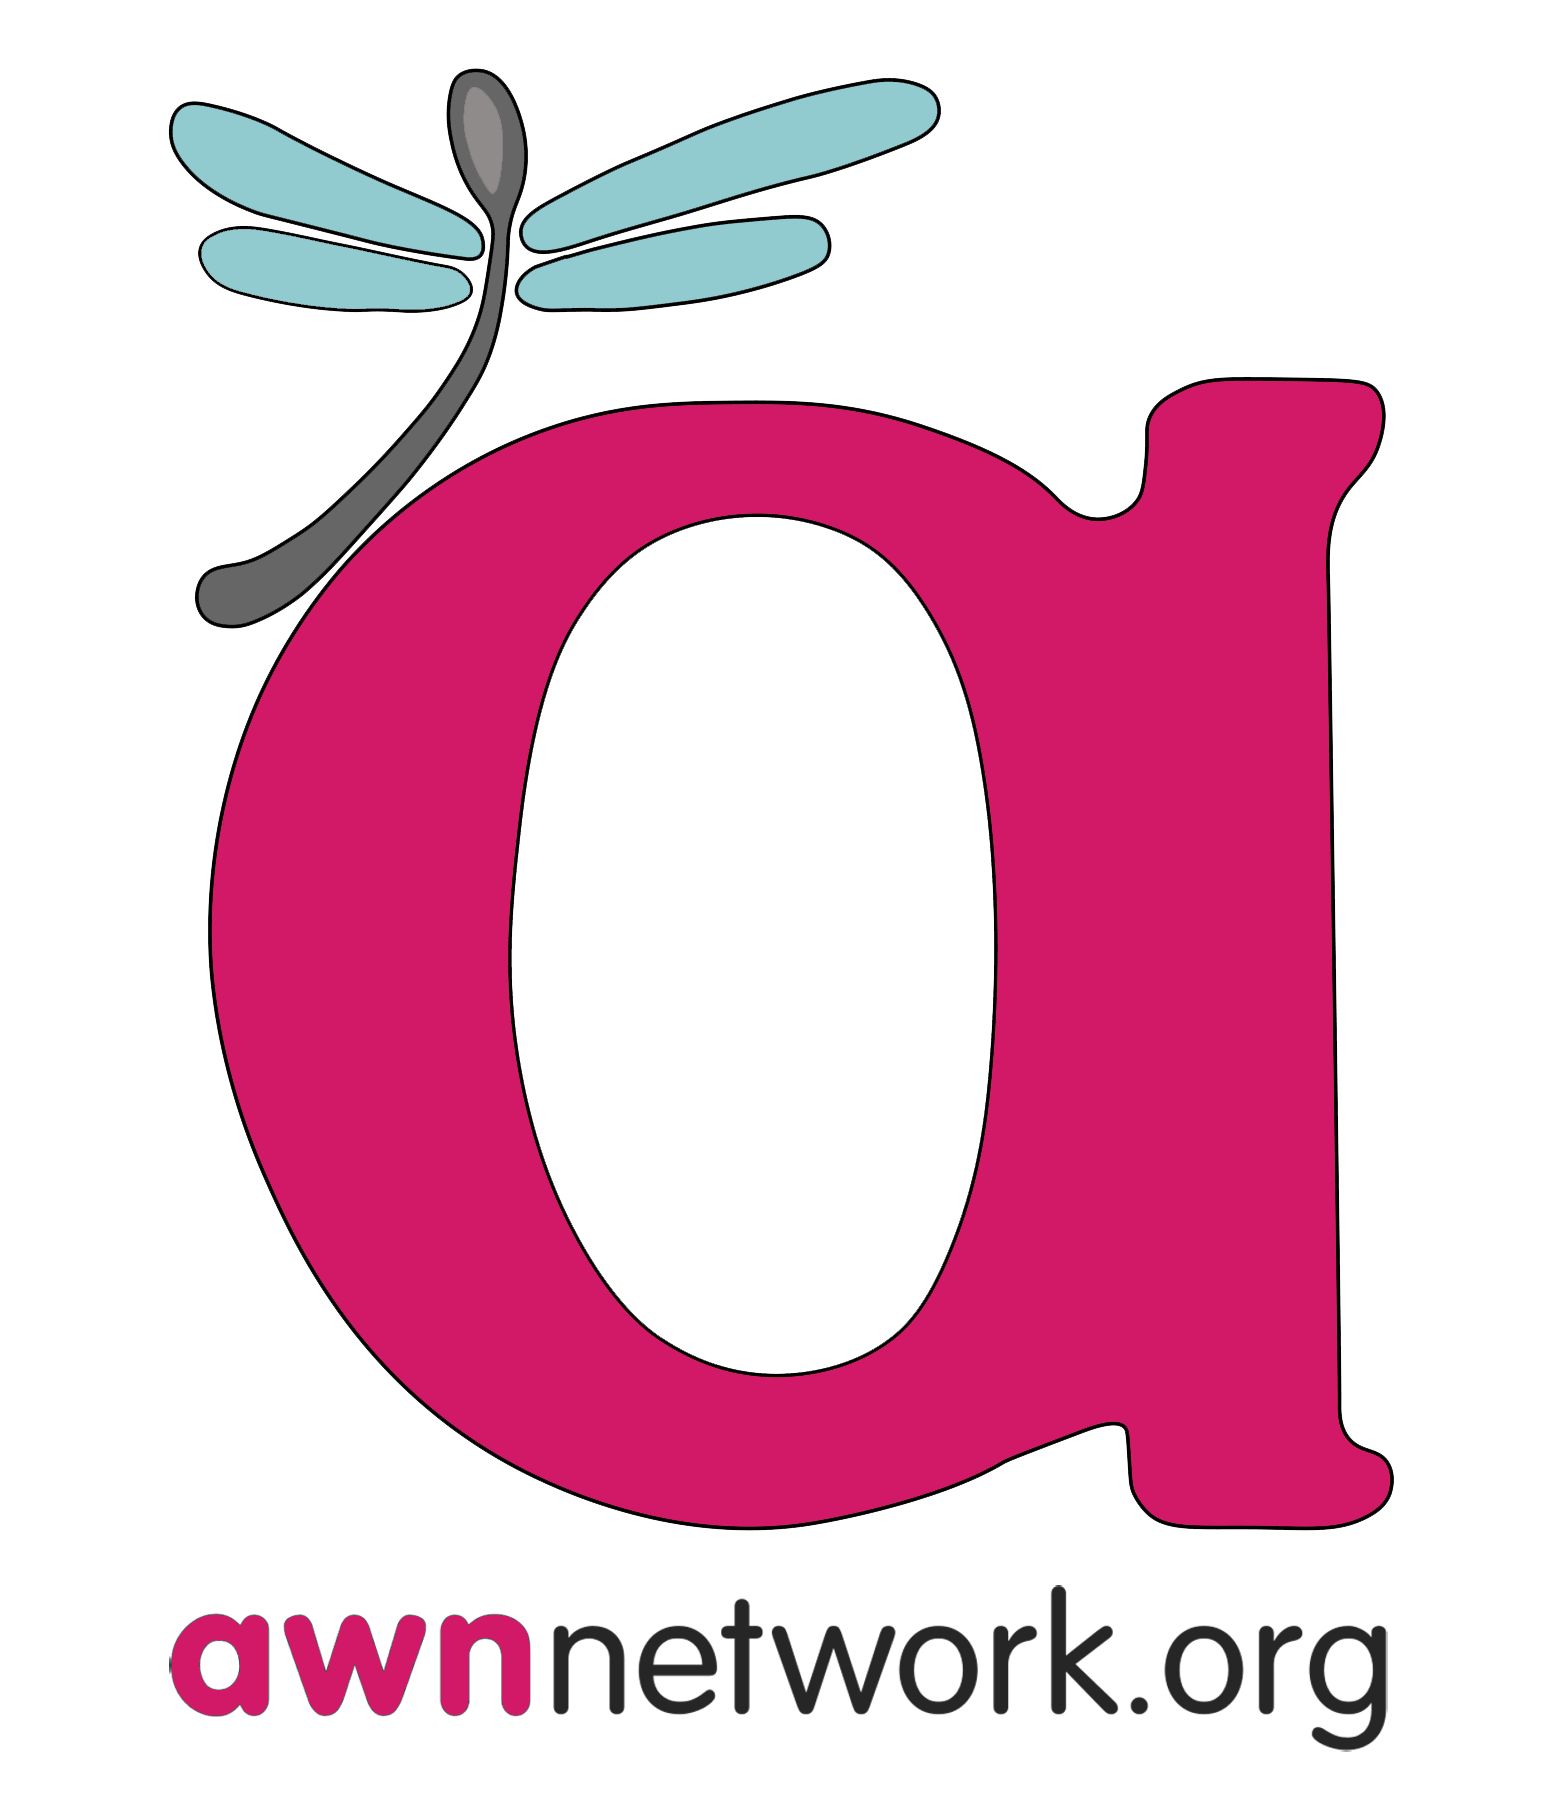 awn network logo